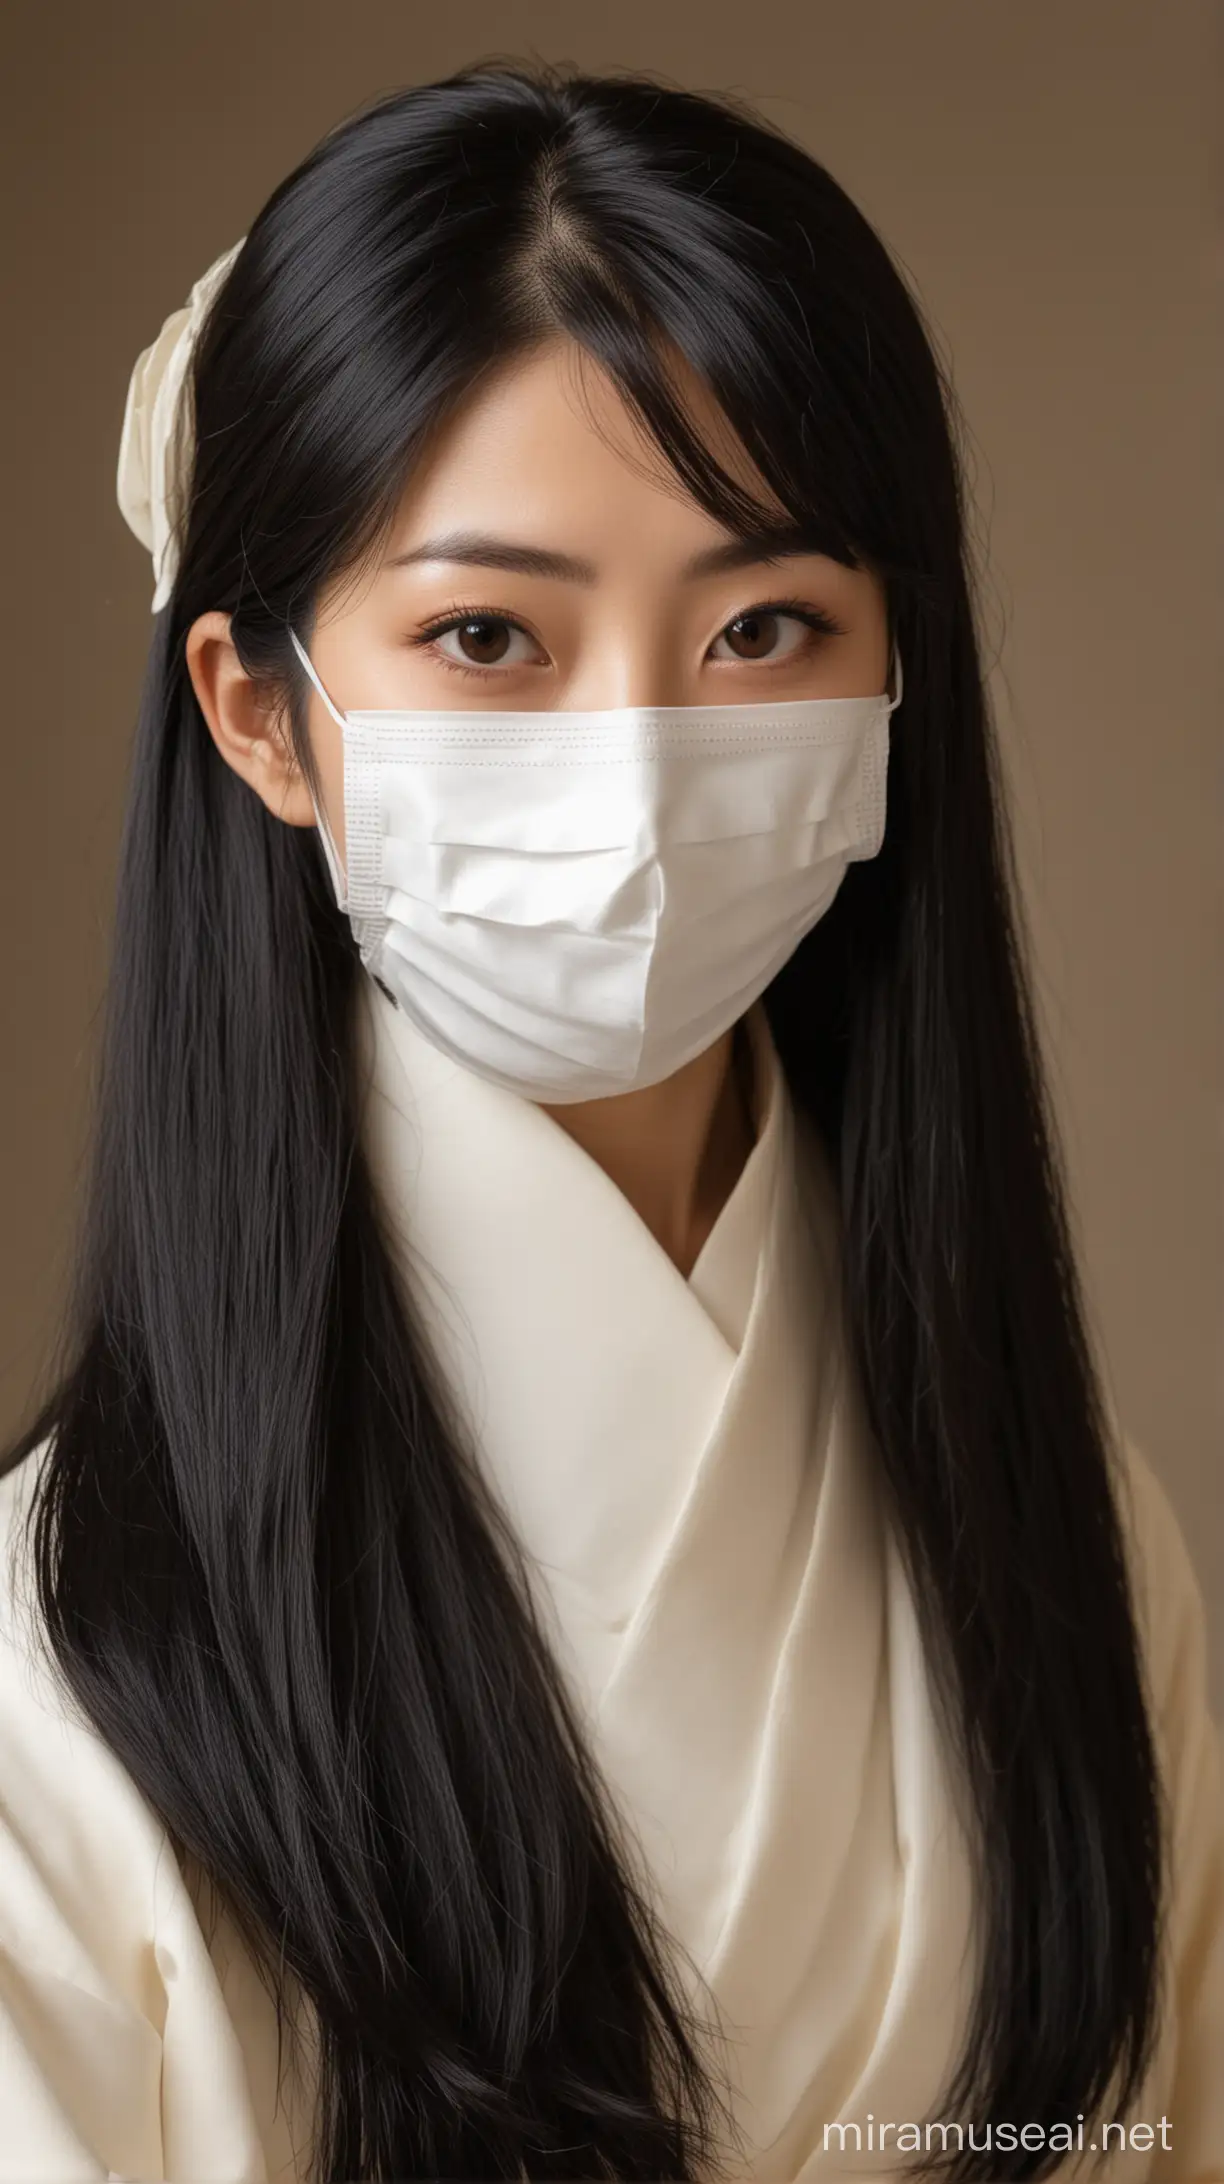 wanita cantik asal jepang, memakai masker medis, rambut hitam panjang, memakai pakaian selir jepang tahun 1970.